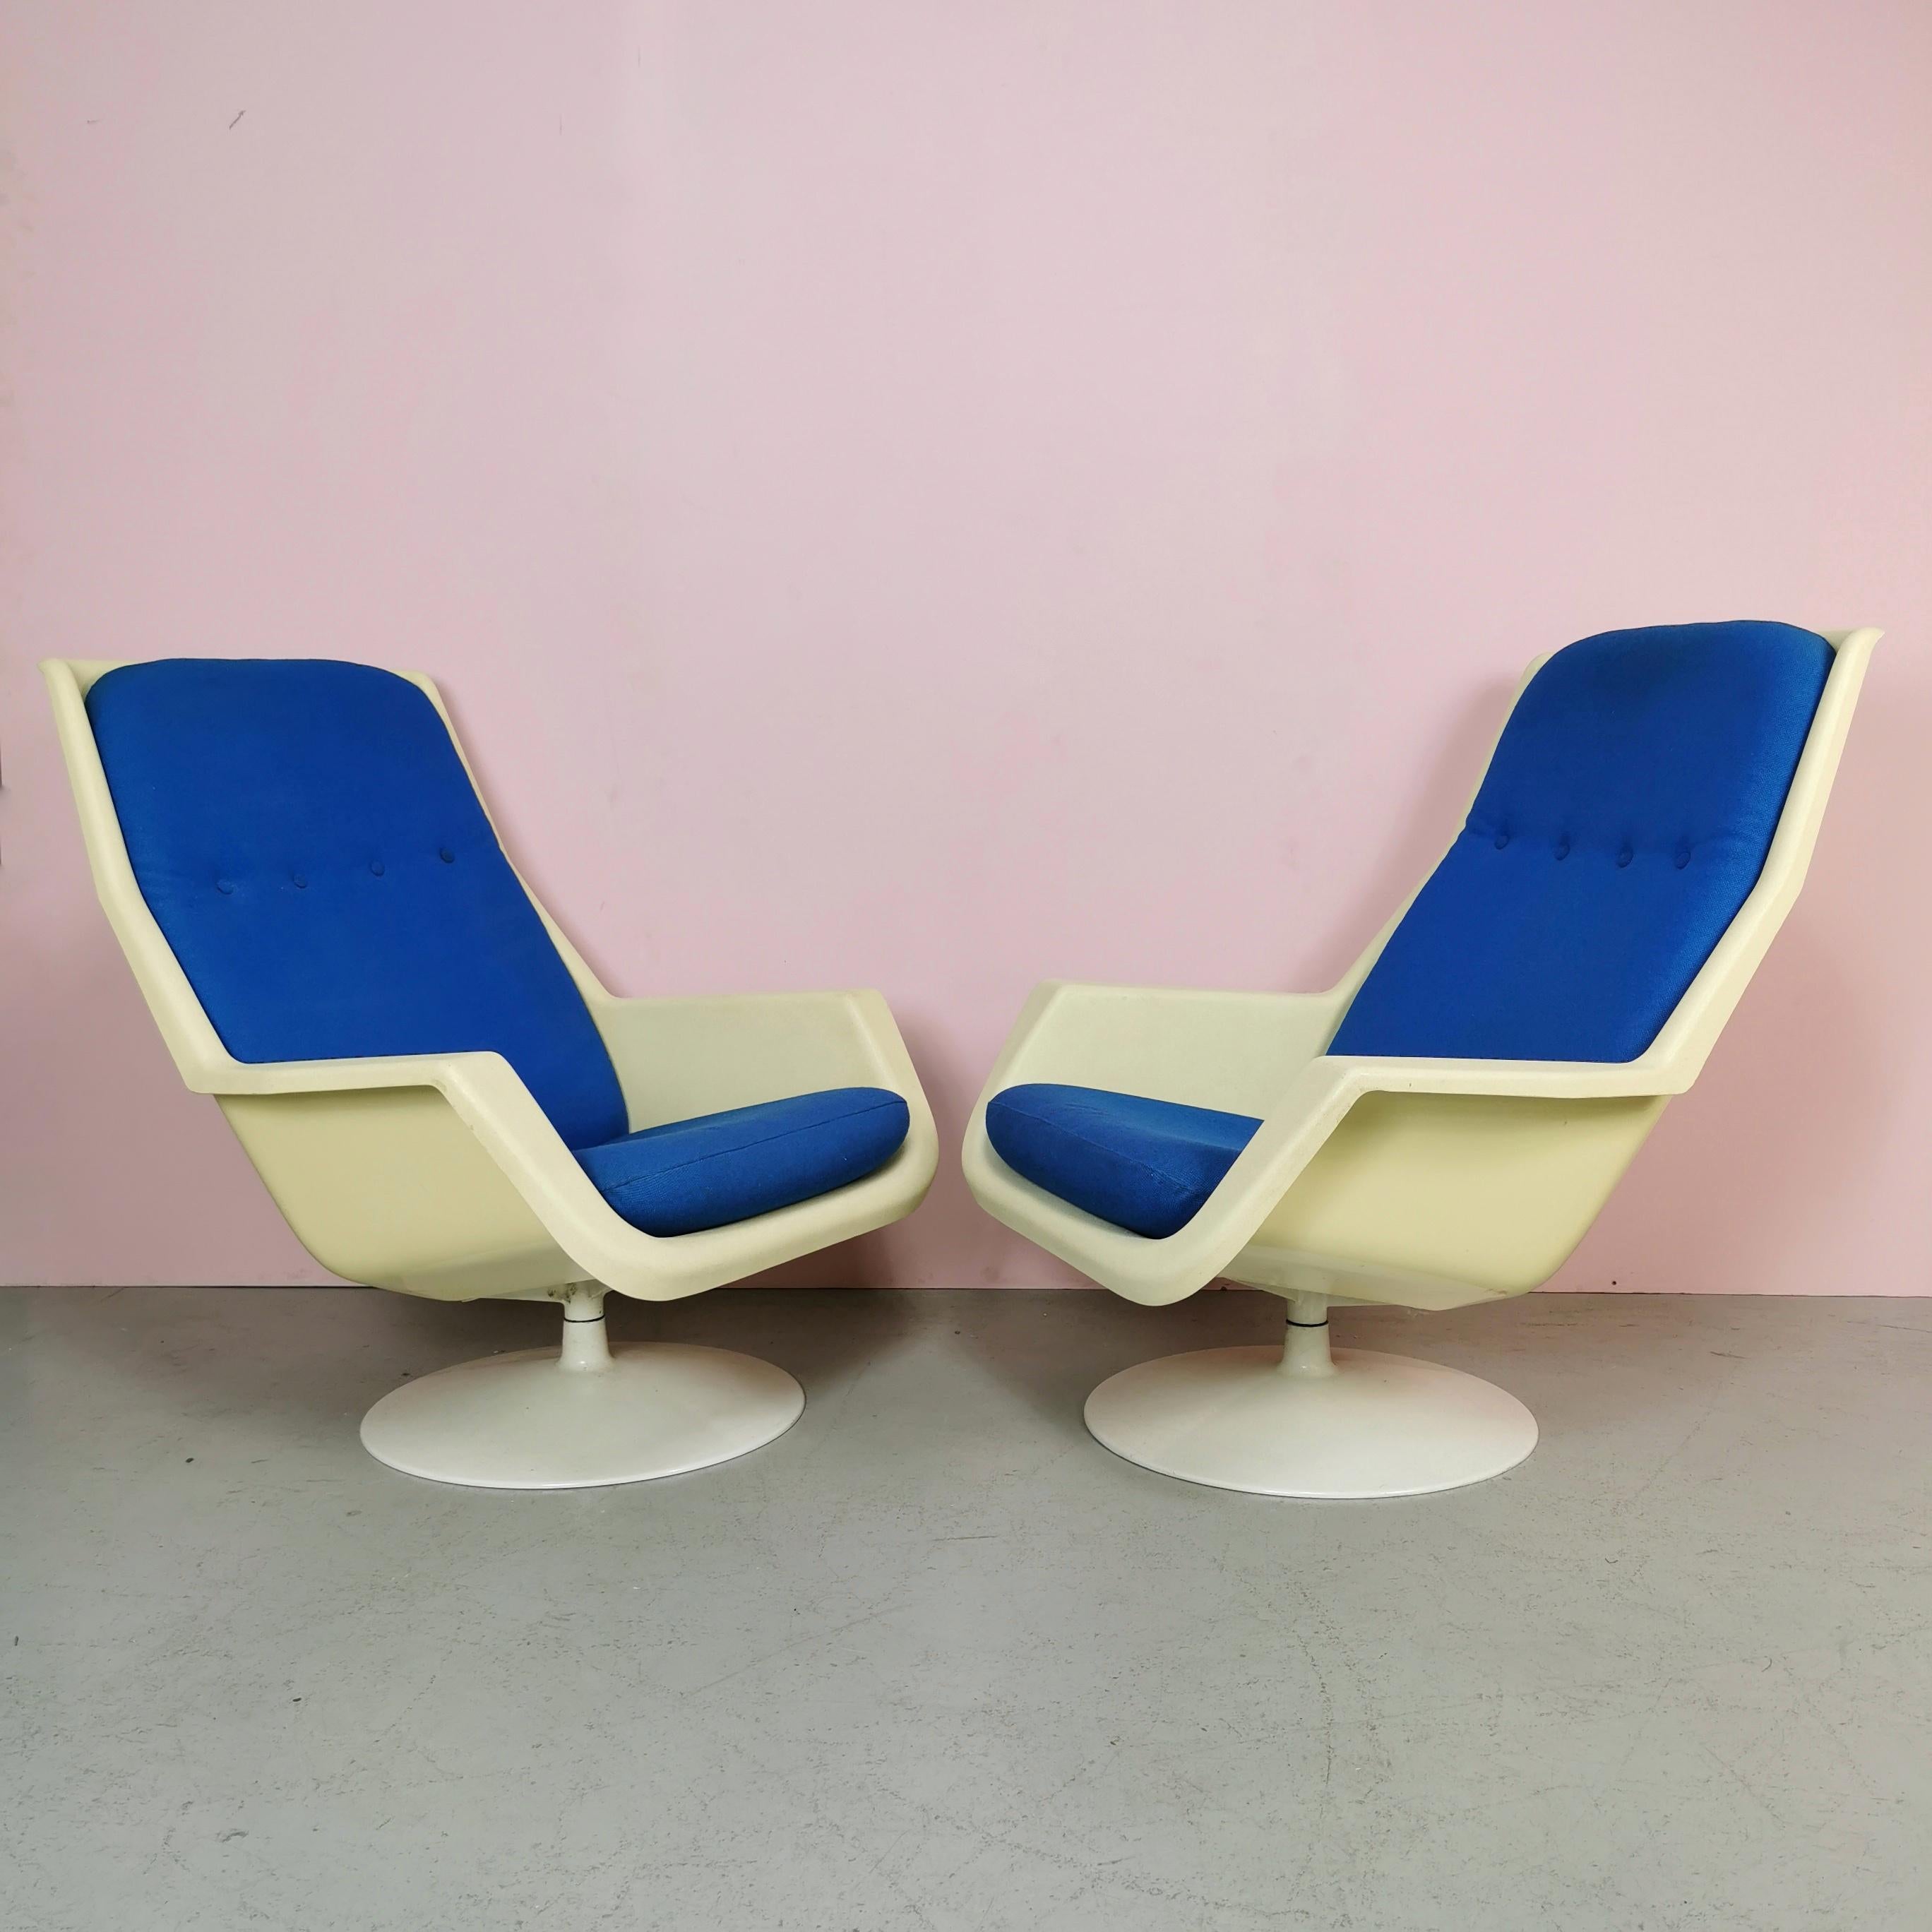 ara, ein Paar Sessel, hergestellt in England von Hille und entworfen von Robin Day in den frühen 1970er Jahren. Metallgestell, geformte Kunststoffschale und blaue Stoffkissen. Die Sessel sind in sehr gutem Zustand.
haben leichte